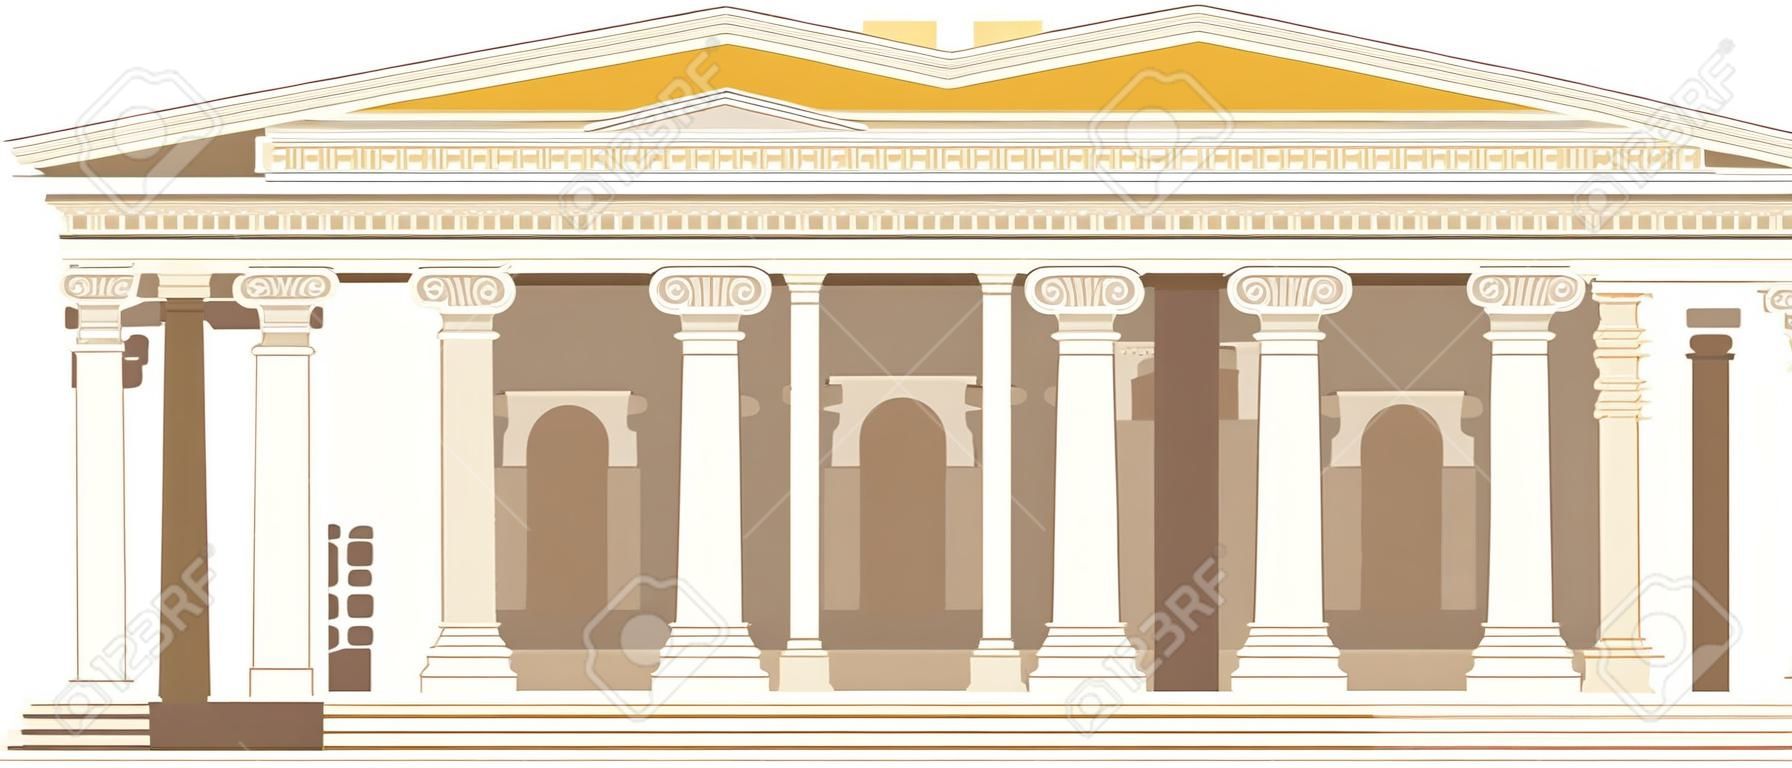 Alte römische Pantheon-Tempelsäule, die Rom-Fliesen baut, antike Kultur der strategischen Entwicklung. Italienisches Wahrzeichen Pantheon, alter Tempel auf dem Stadtplatz. Traditionelle historische Landschaft der Antike